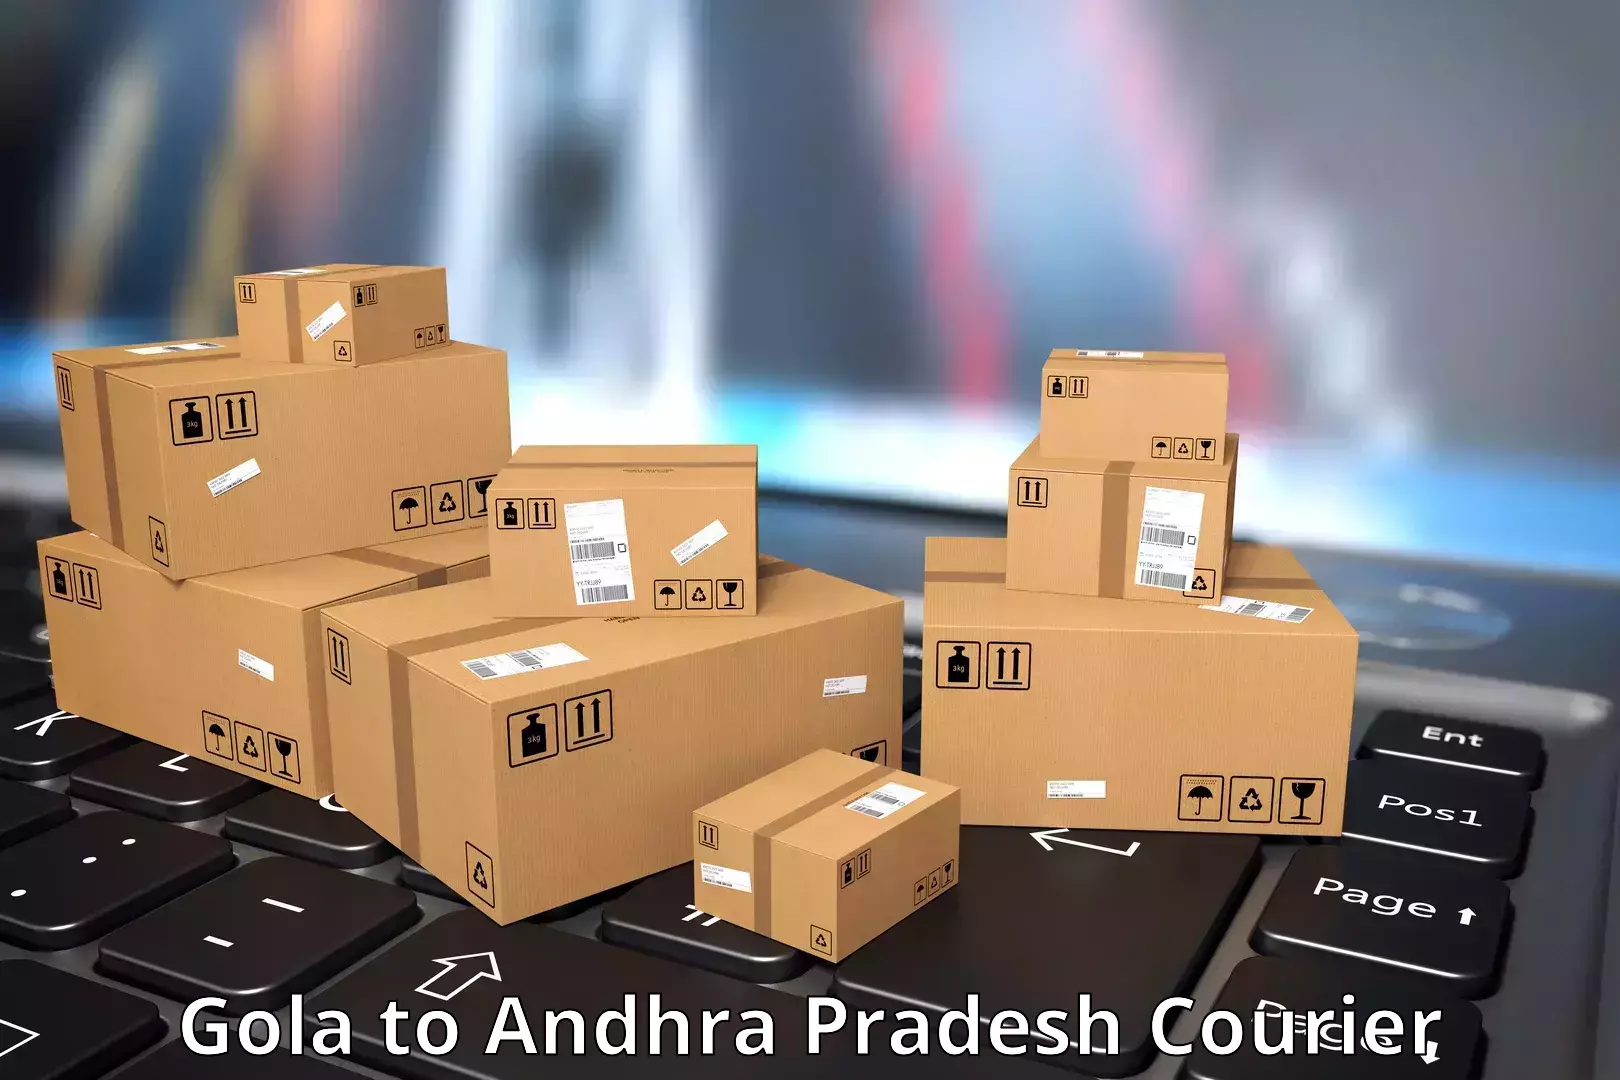 Customized shipping options Gola to Kandukur